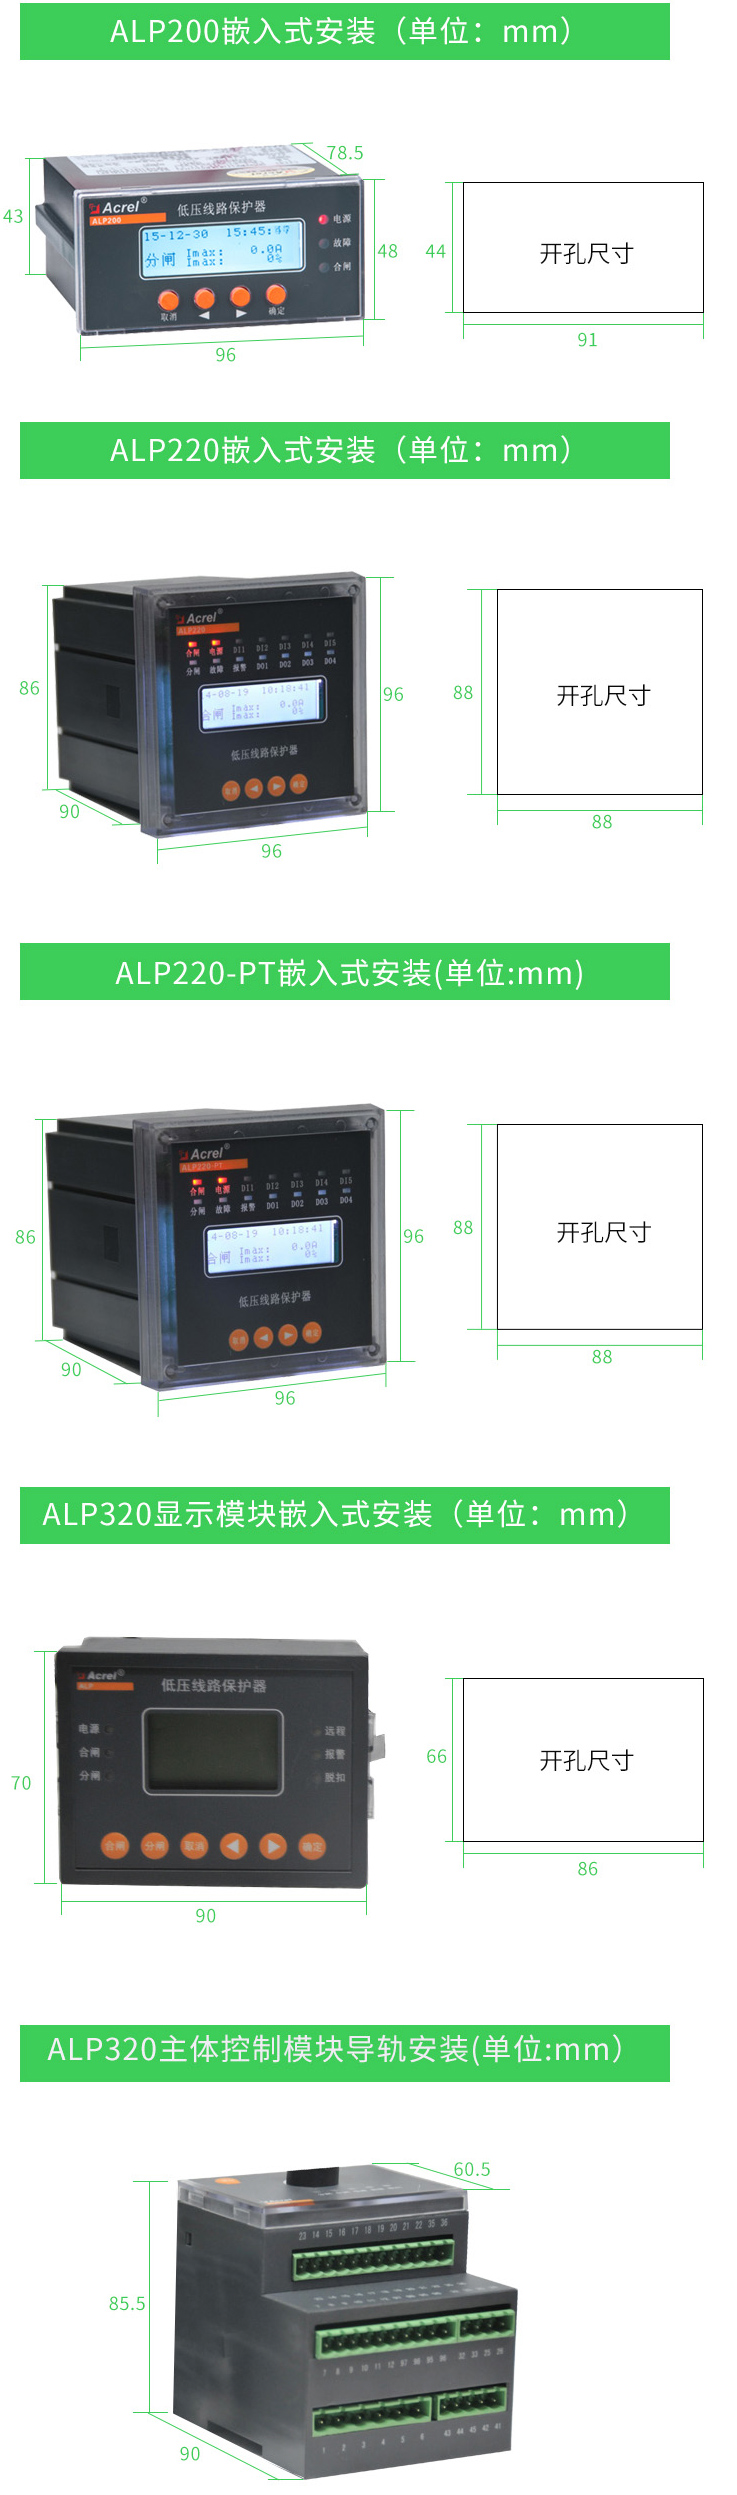 安科瑞ALP220嵌入式安装低压线路保护器用于煤矿石化电力